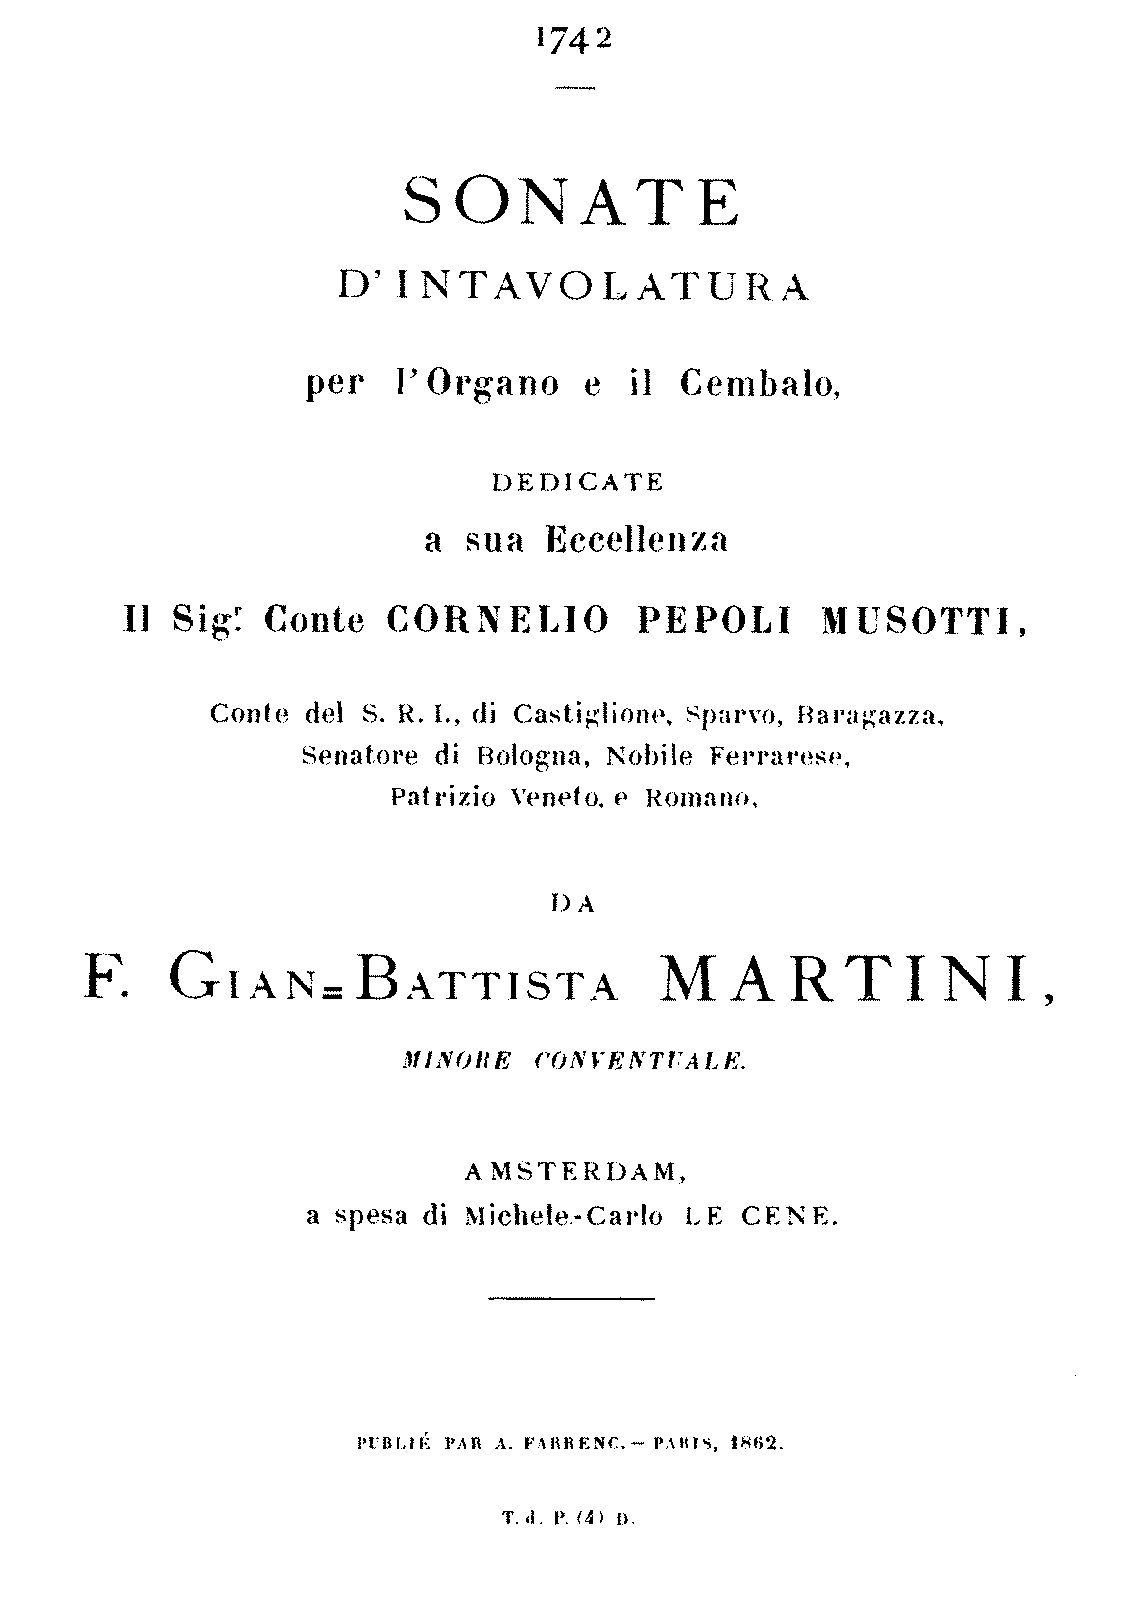 Organ Sonata in F major, B 4.I.12 (Martini, Giovanni Battista) - IMSLP ...